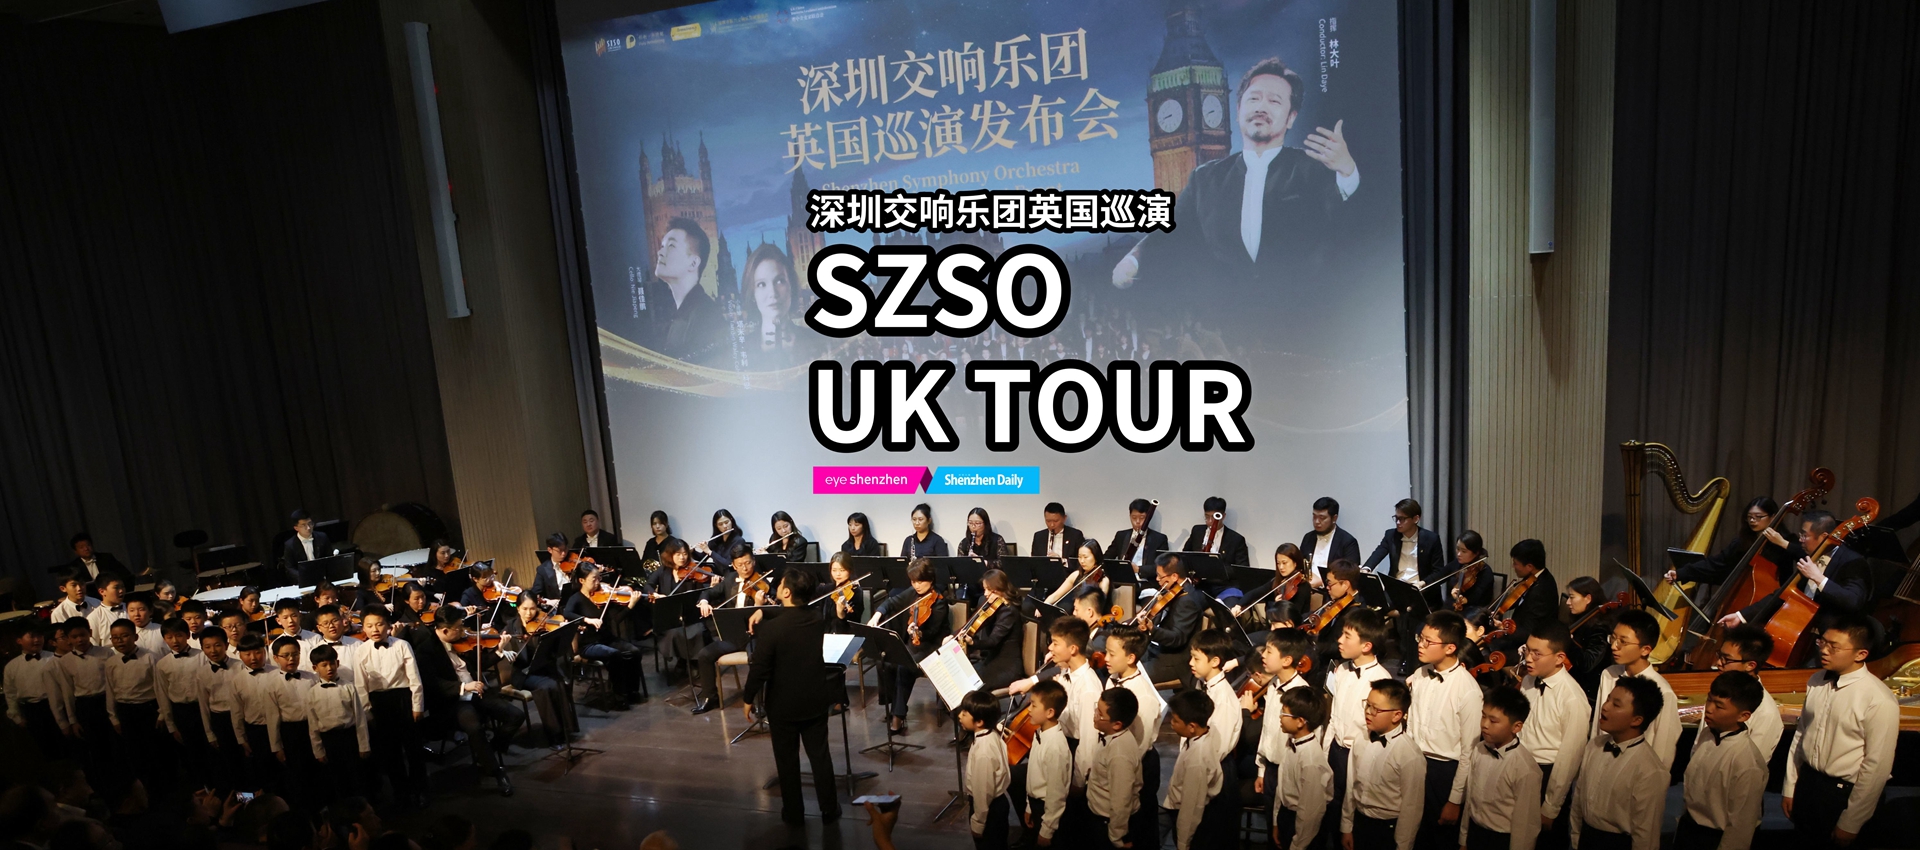 SZSO UK tour